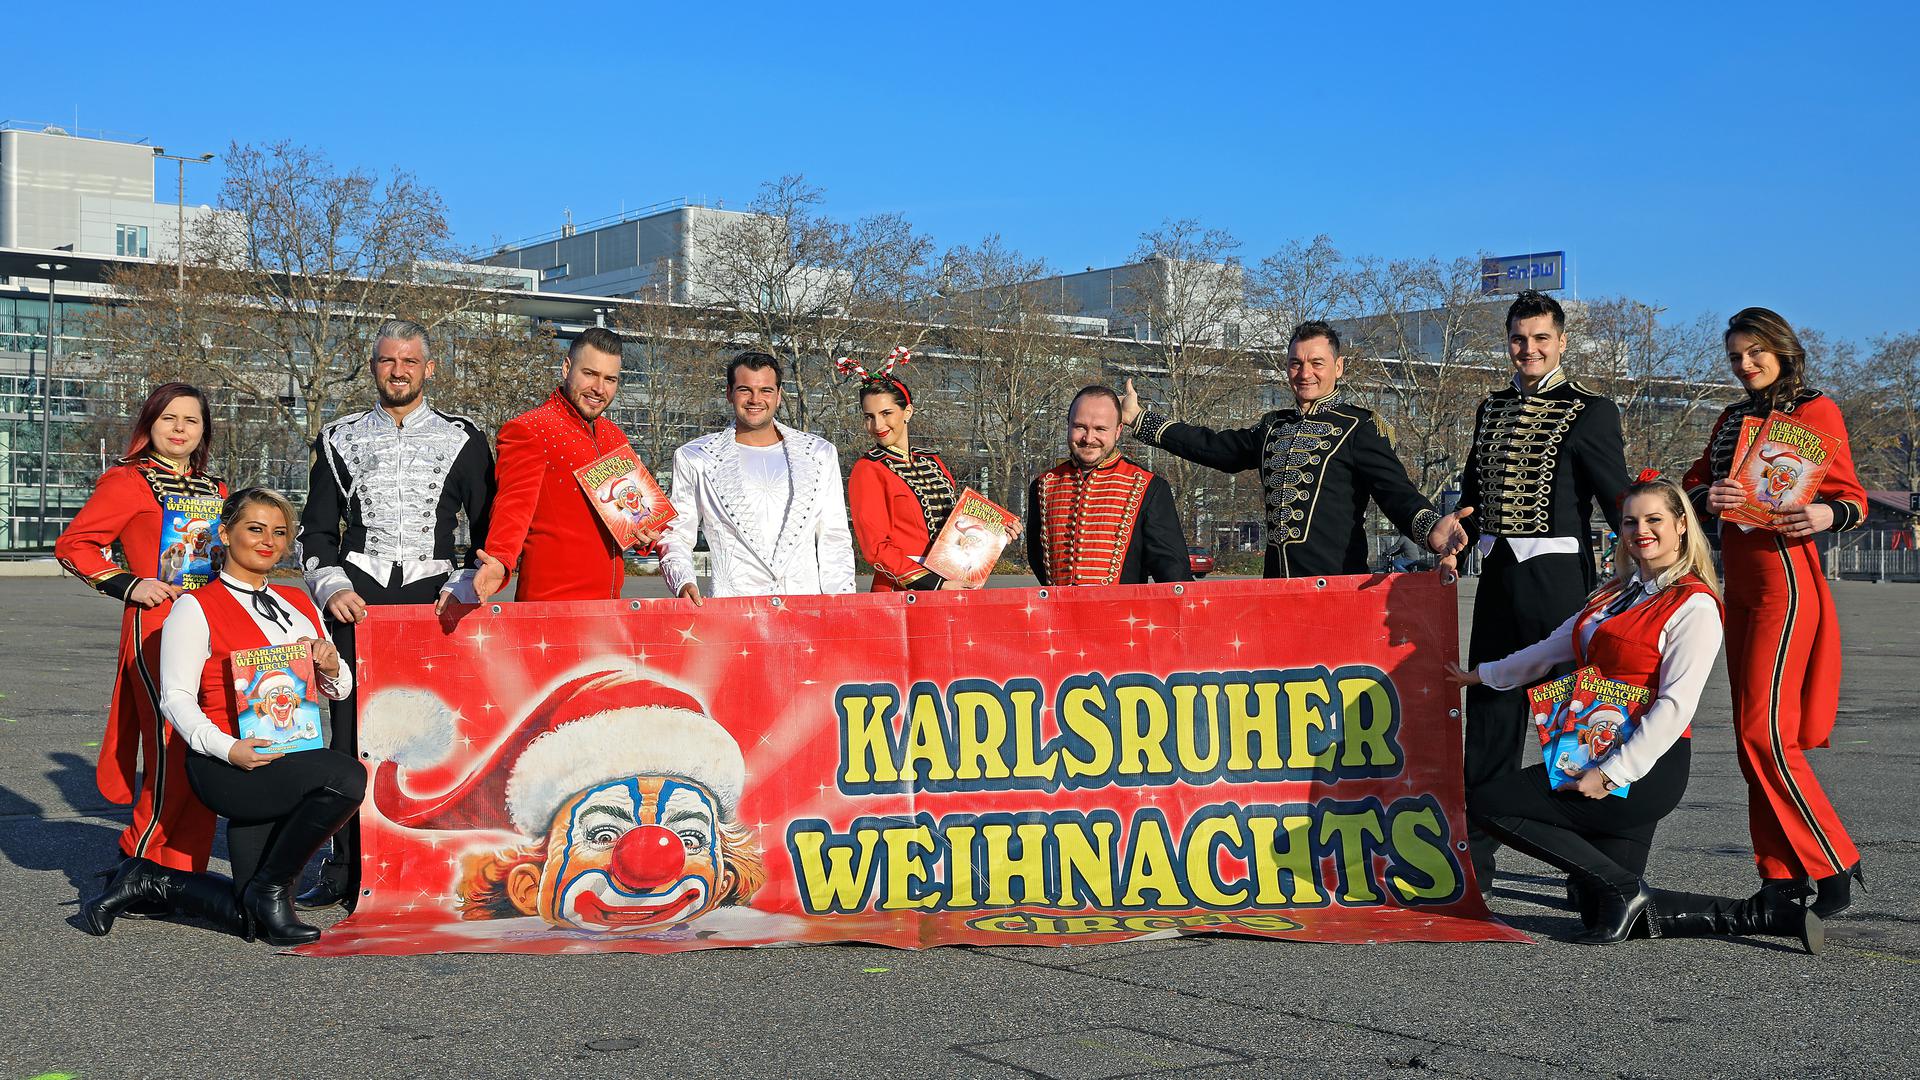 © Jodo-Foto /  Joerg  Donecker// 18.12.2020 Weihnachts-Circus in Karlsruhe auf dem Messplatz als Zeichen / Foto: ohne Abstand, da laut Herrn Joachim Sperlich (4.v.re)  alle aus einem Haushalt sind,                -Copyright - Jodo-Foto /  Joerg  Donecker Sonnenbergstr.4  D-76228 KARLSRUHE TEL:  0049 (0) 721-9473285 FAX:  0049 (0) 721 4903368  Mobil: 0049 (0) 172 7238737 E-Mail:  joerg.donecker@t-online.de Sparkasse Karlsruhe  IBAN: DE12 6605 0101 0010 0395 50,
BIC: KARSDE66XX Steuernummer 34140/28360 Veroeffentlichung nur gegen Honorar nach MFM zzgl. ges. Mwst.  , Belegexemplar und Namensnennung. Es gelten meine AGB.